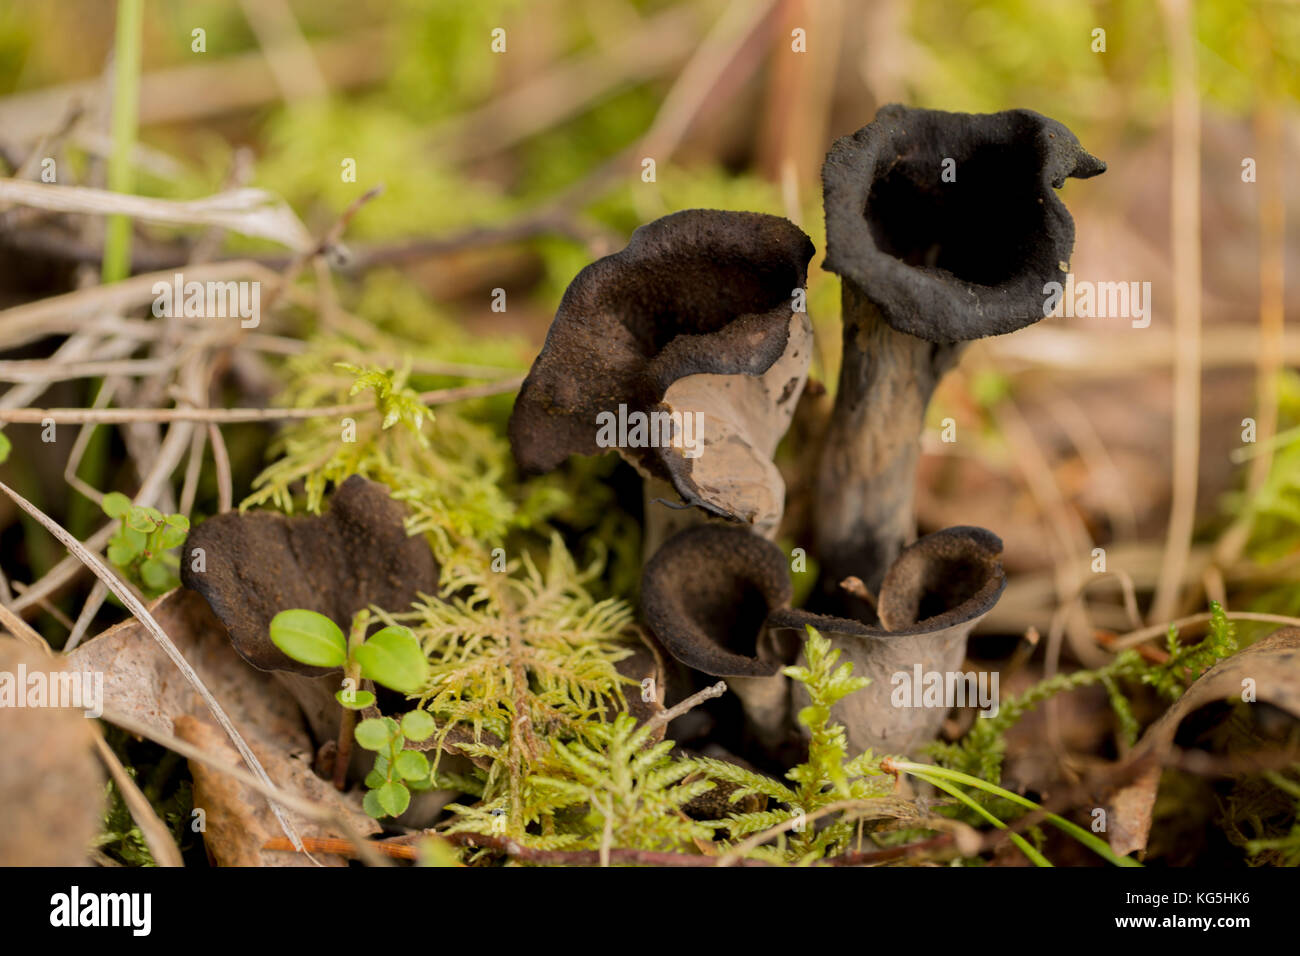 Black Trumpet Mushroom, Craterellus cornucopioides Stock Photo